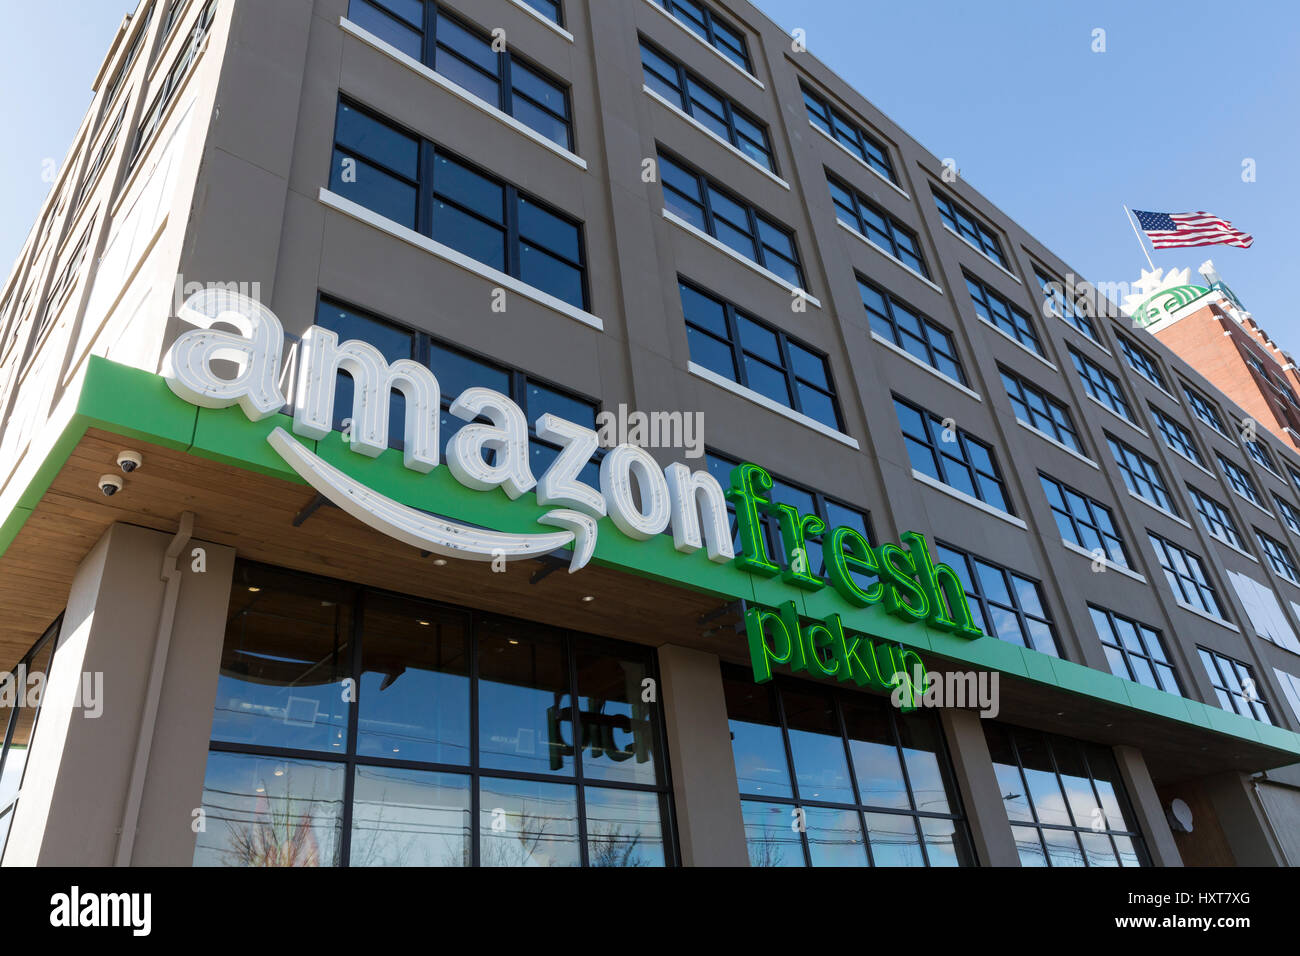 Seattle, Washington: recogedor AmazonFresh SoDo. Amazon.com reveló dos  ubicaciones de recogida de comestibles en Seattle SoDo y Ballard barrios  donde los compradores pueden recibir sus compras online en tan sólo quince  minutos